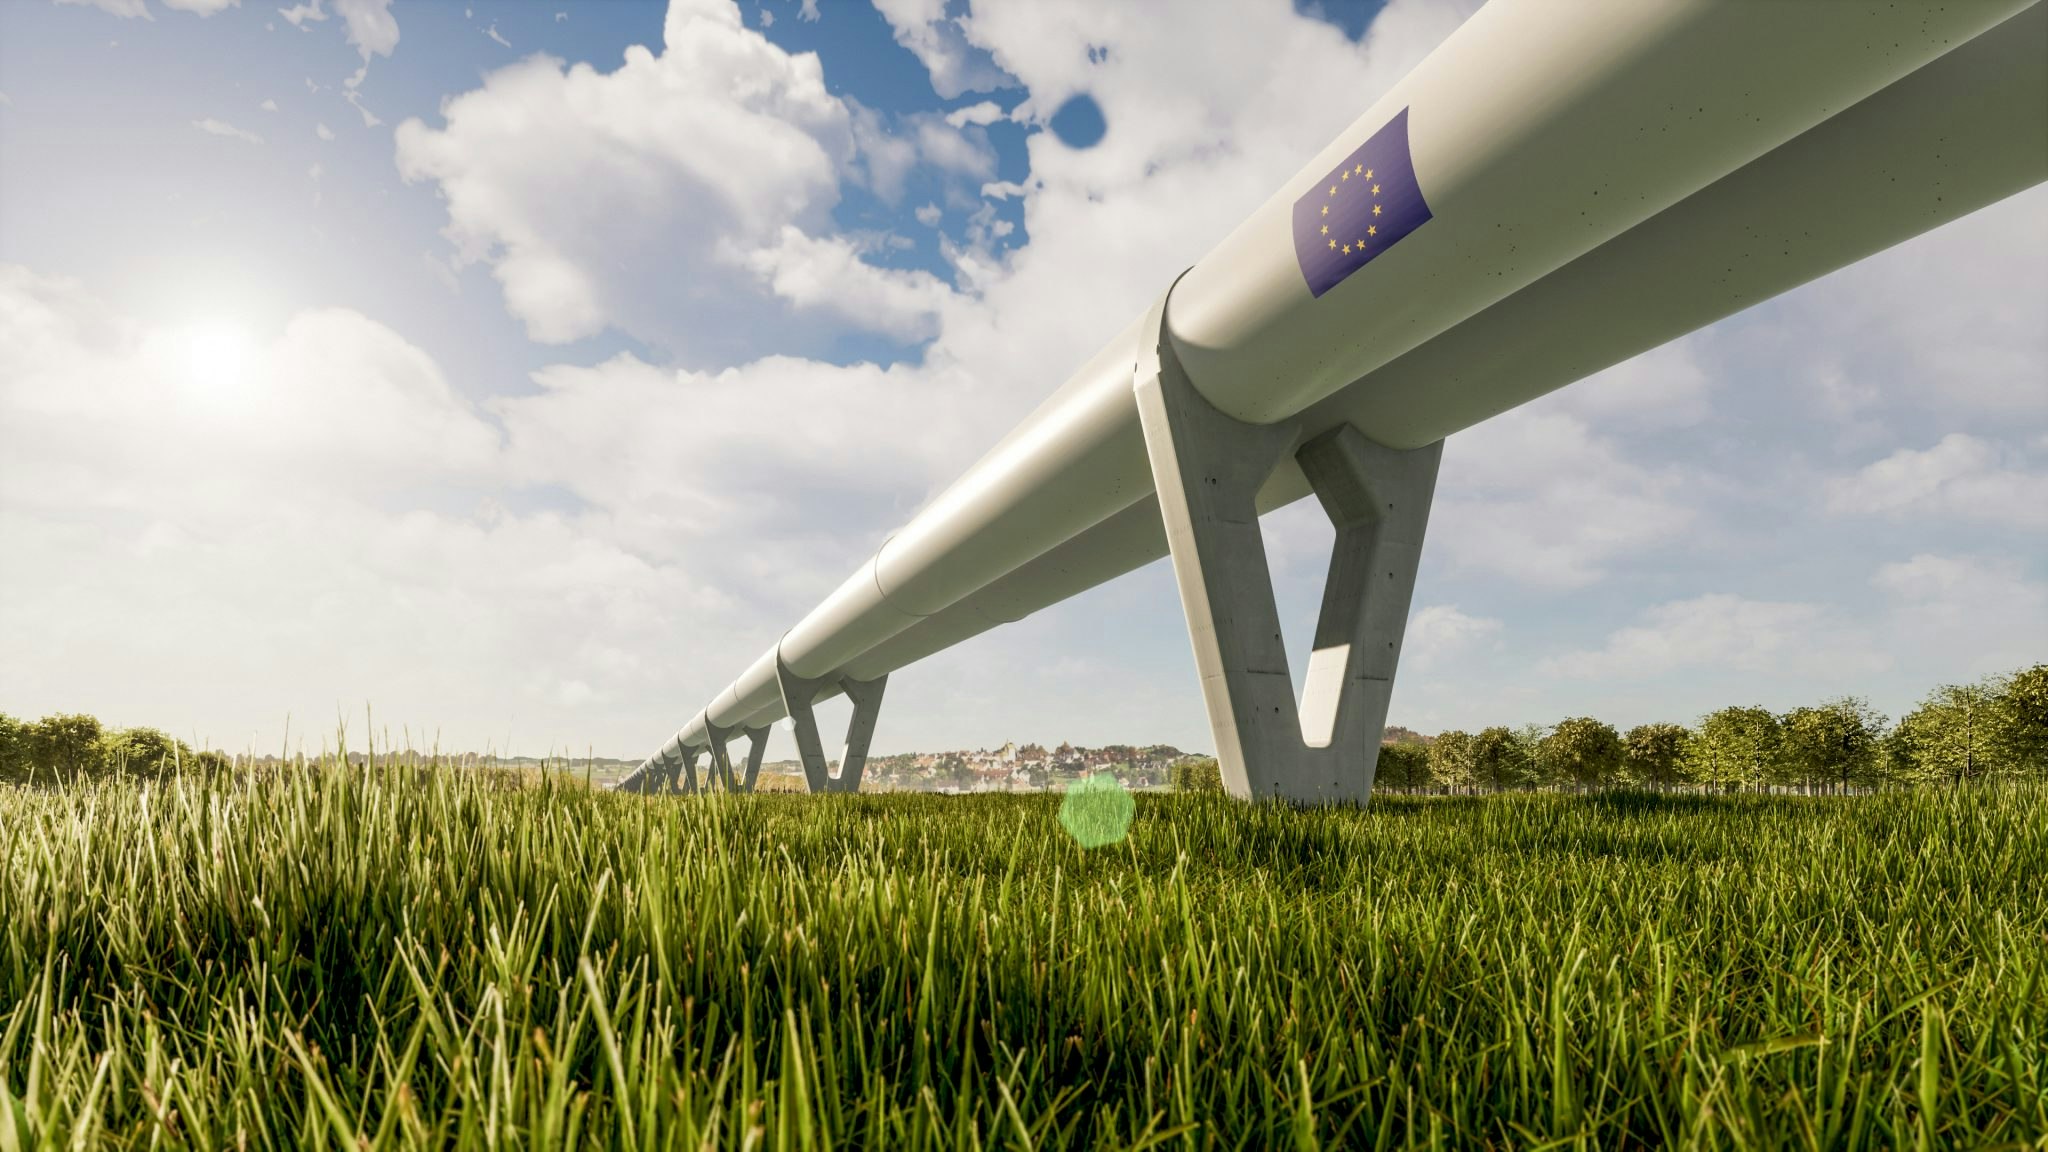 Zeleros hyperloop tunnel over a field of grass